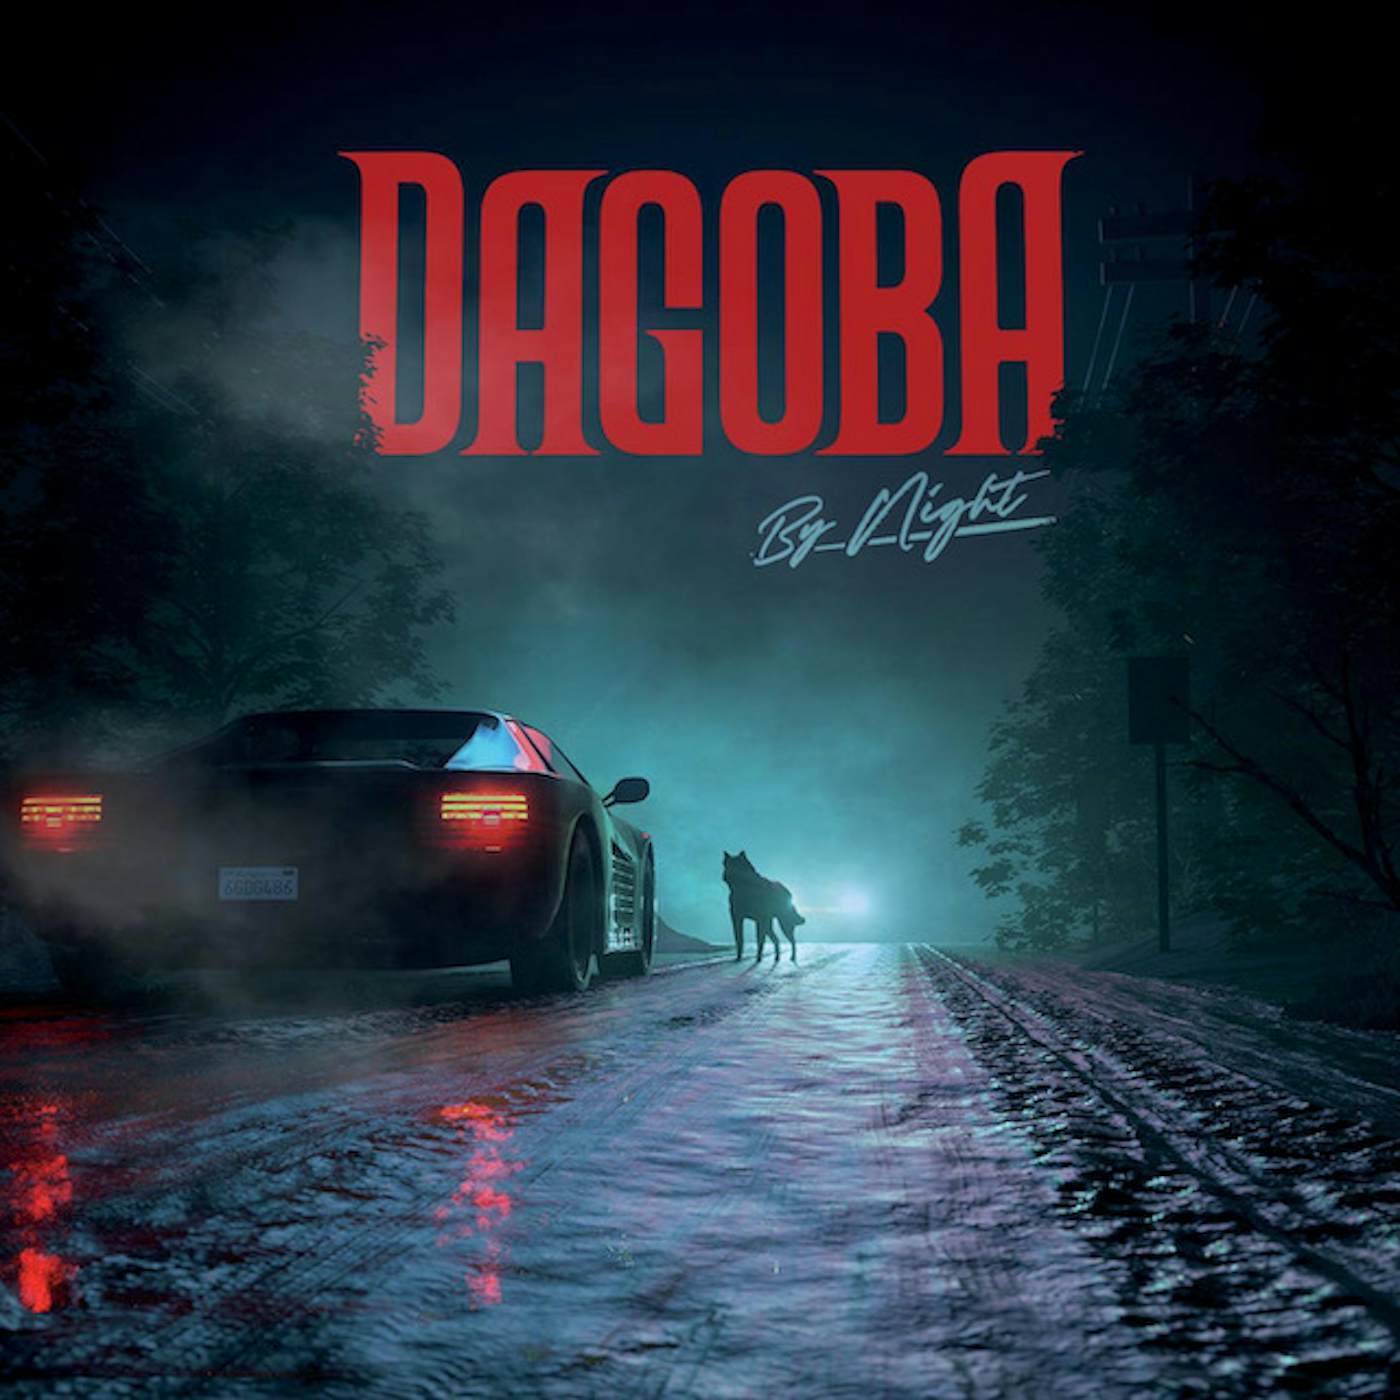 Dagoba By Night Vinyl Record